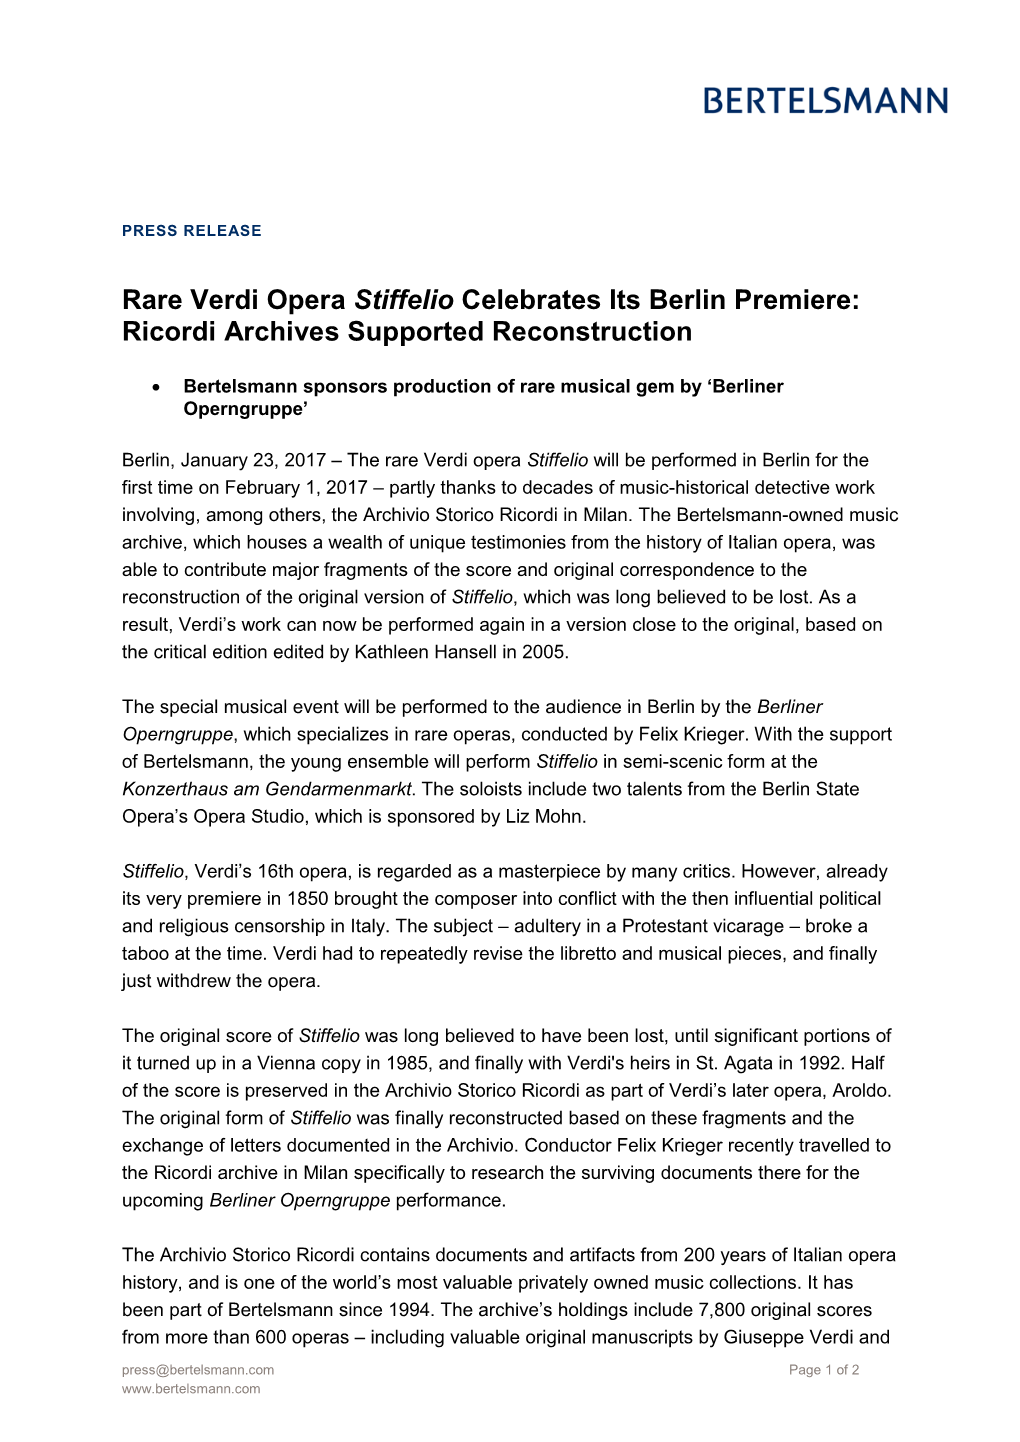 Rare Verdi Opera Stiffelio Celebrates Its Berlin Premiere: Ricordi Archives Supported Reconstruction